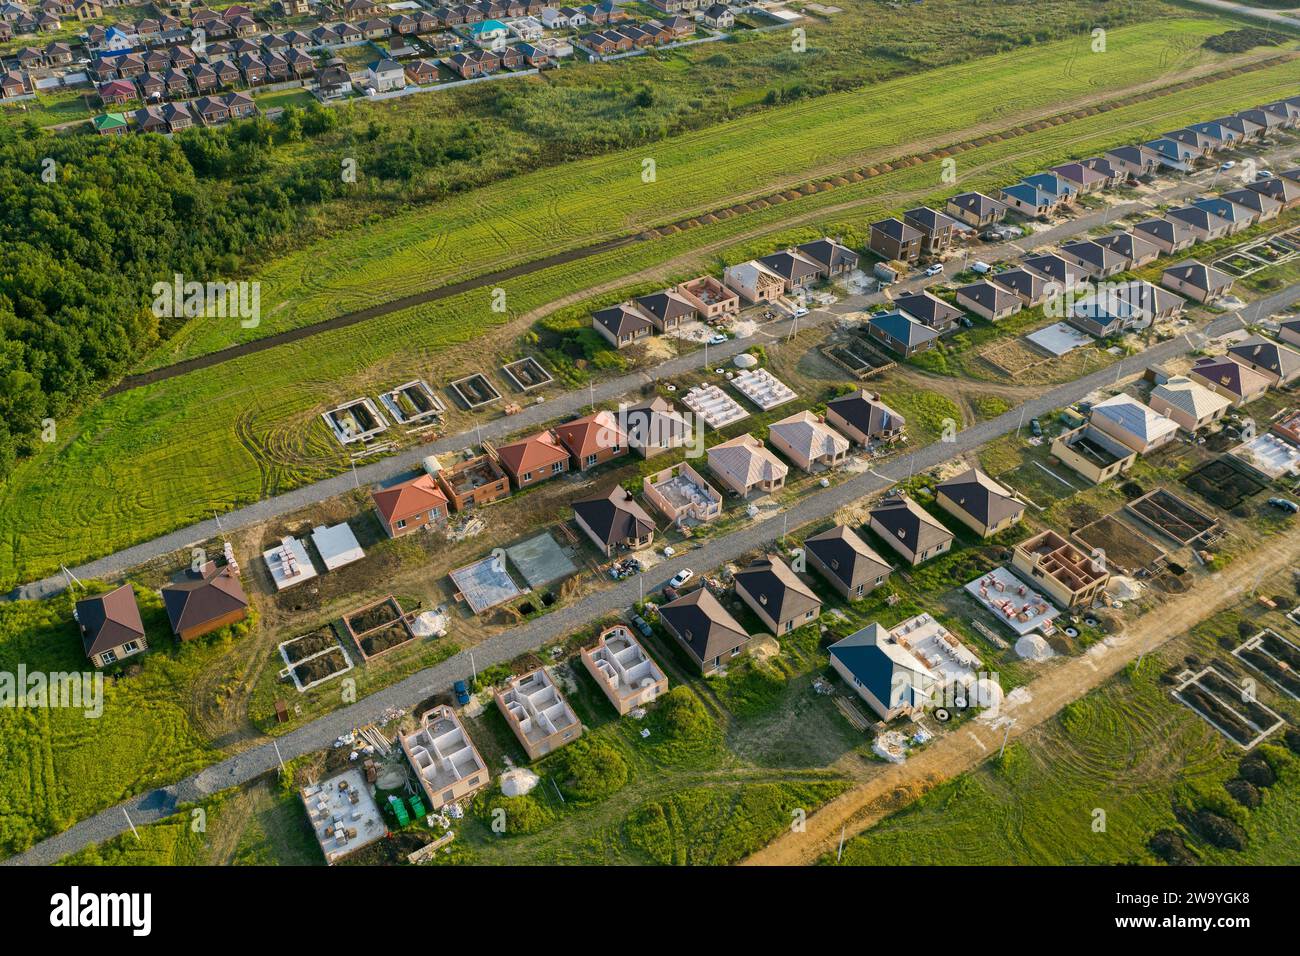 Bau einer vorstädtischen Wohnsiedlung von Cottages. Luftaufnahme... Stockfoto